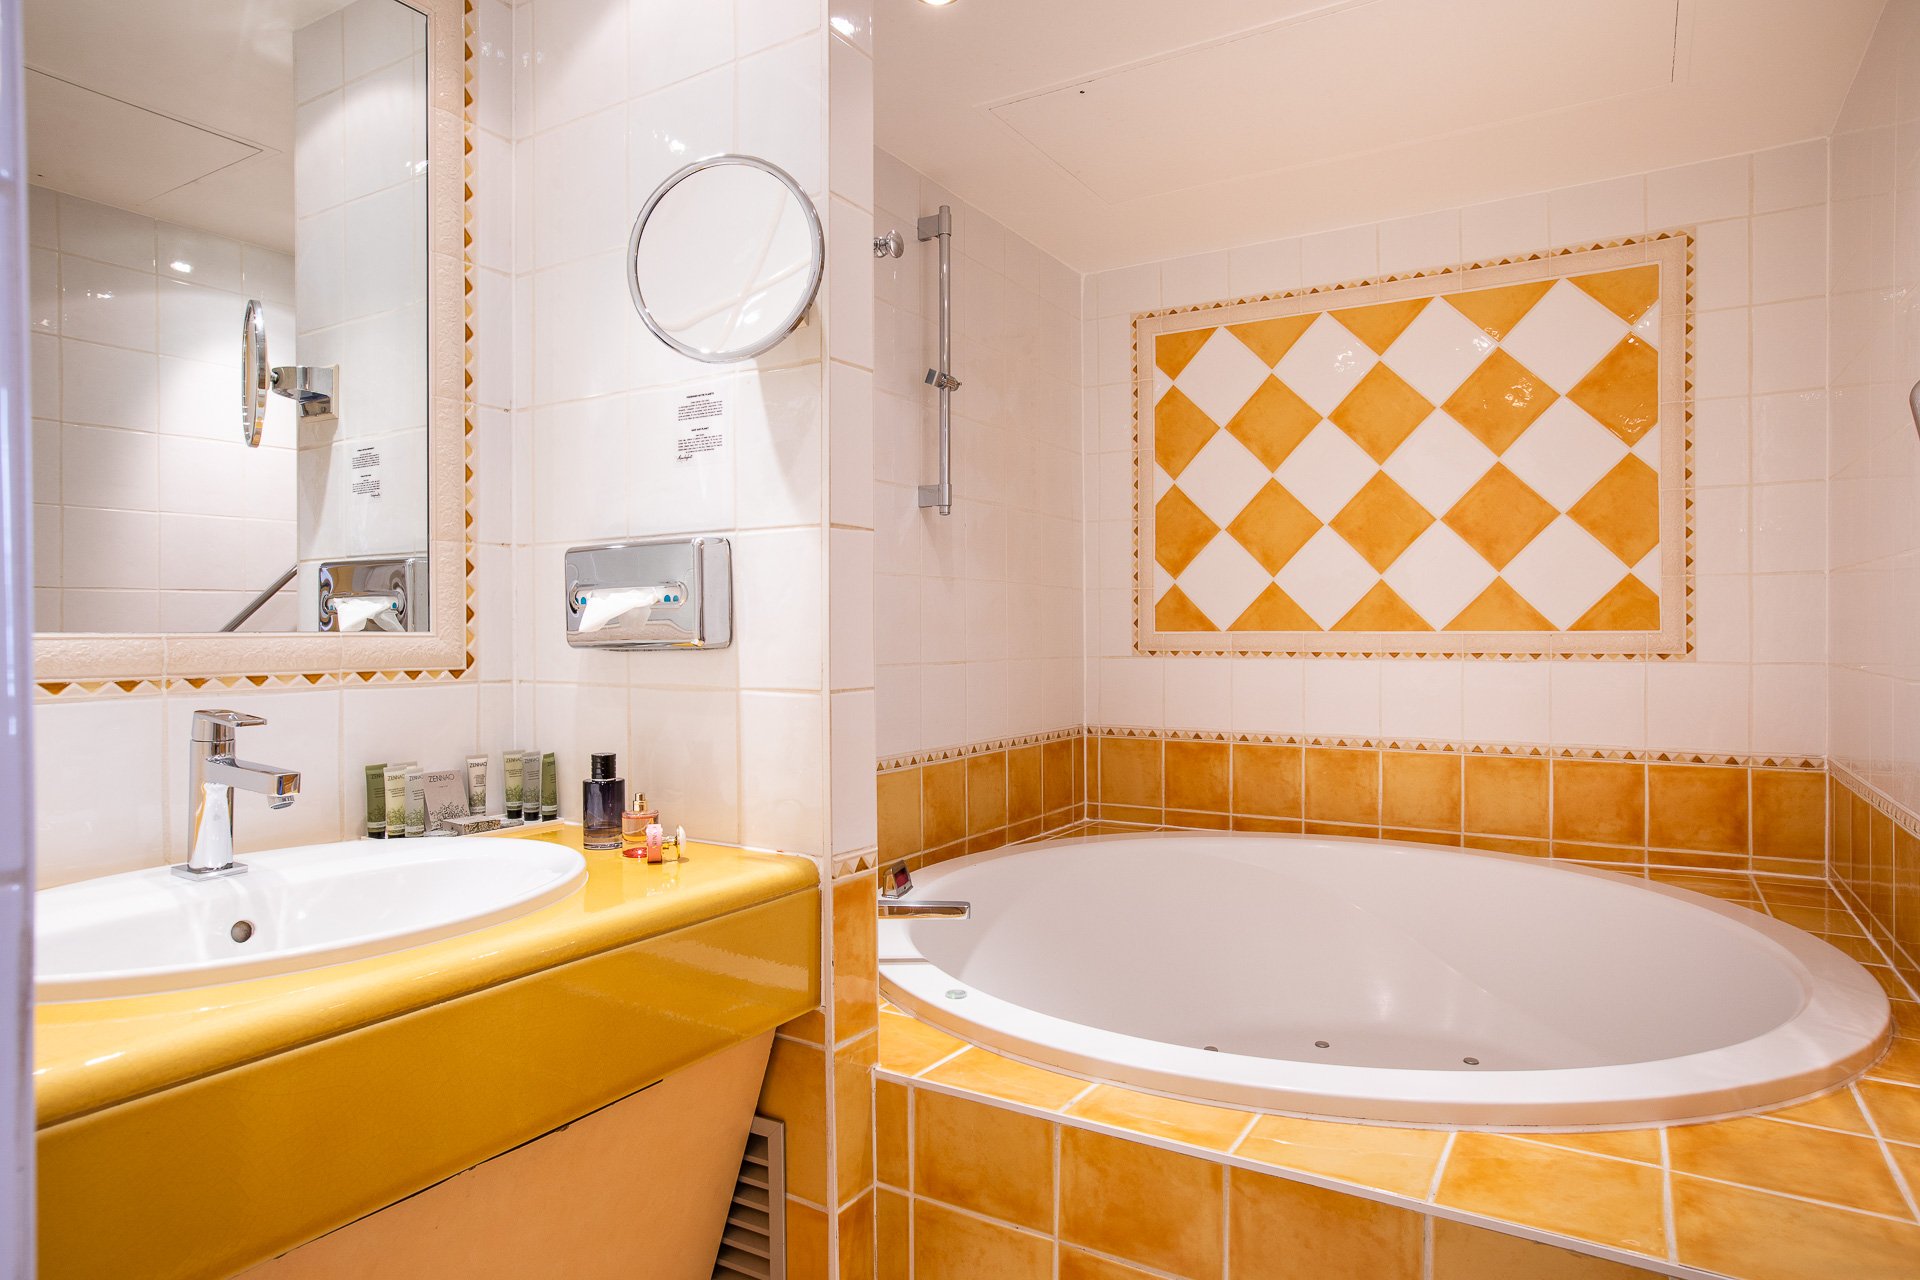 Villa Beaumarchais - Suite - Bathroom - Jacuzzi